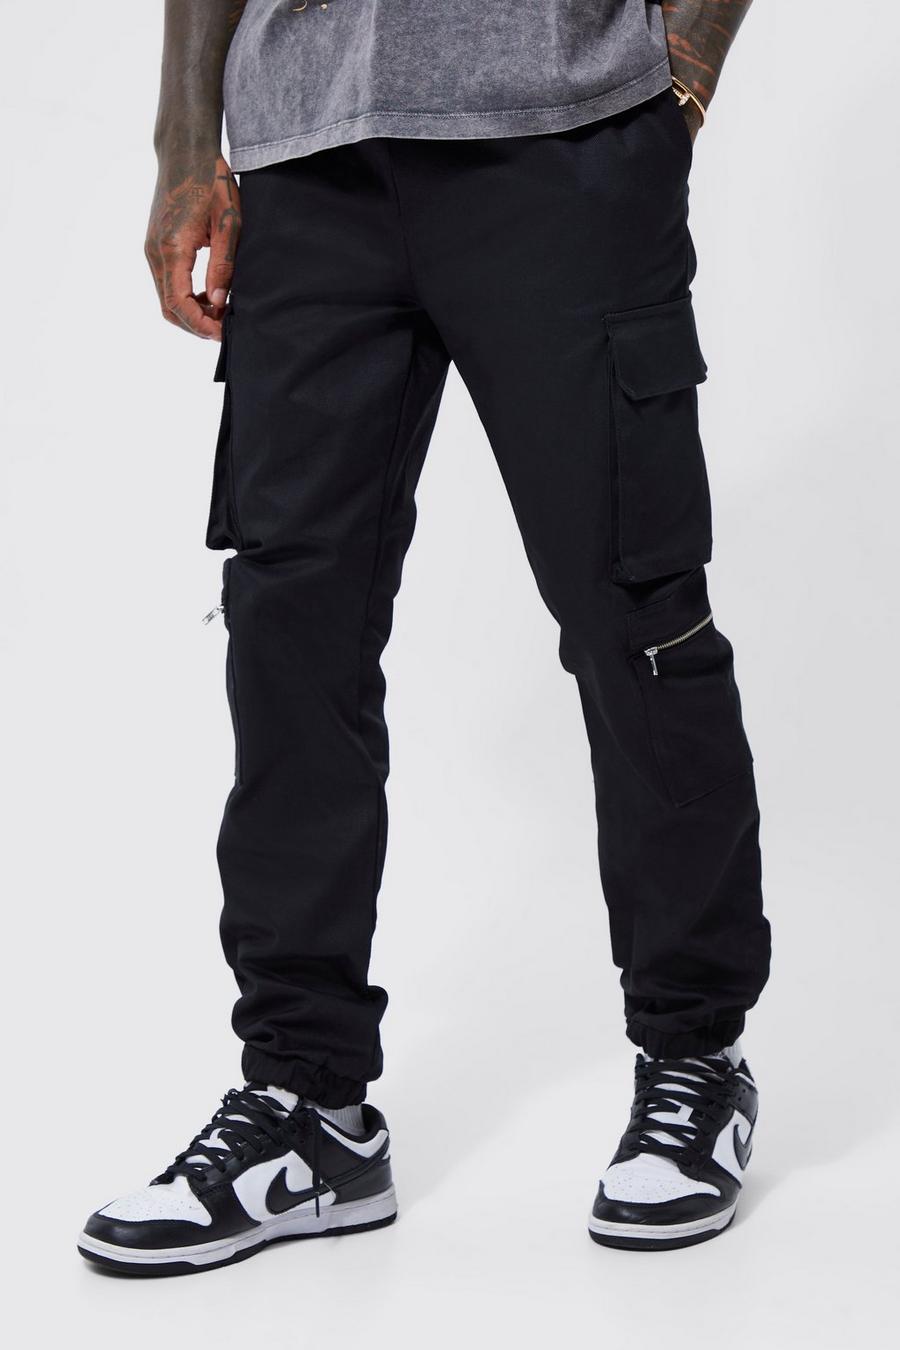 Pantalon cargo zippé à poches multiples, Black